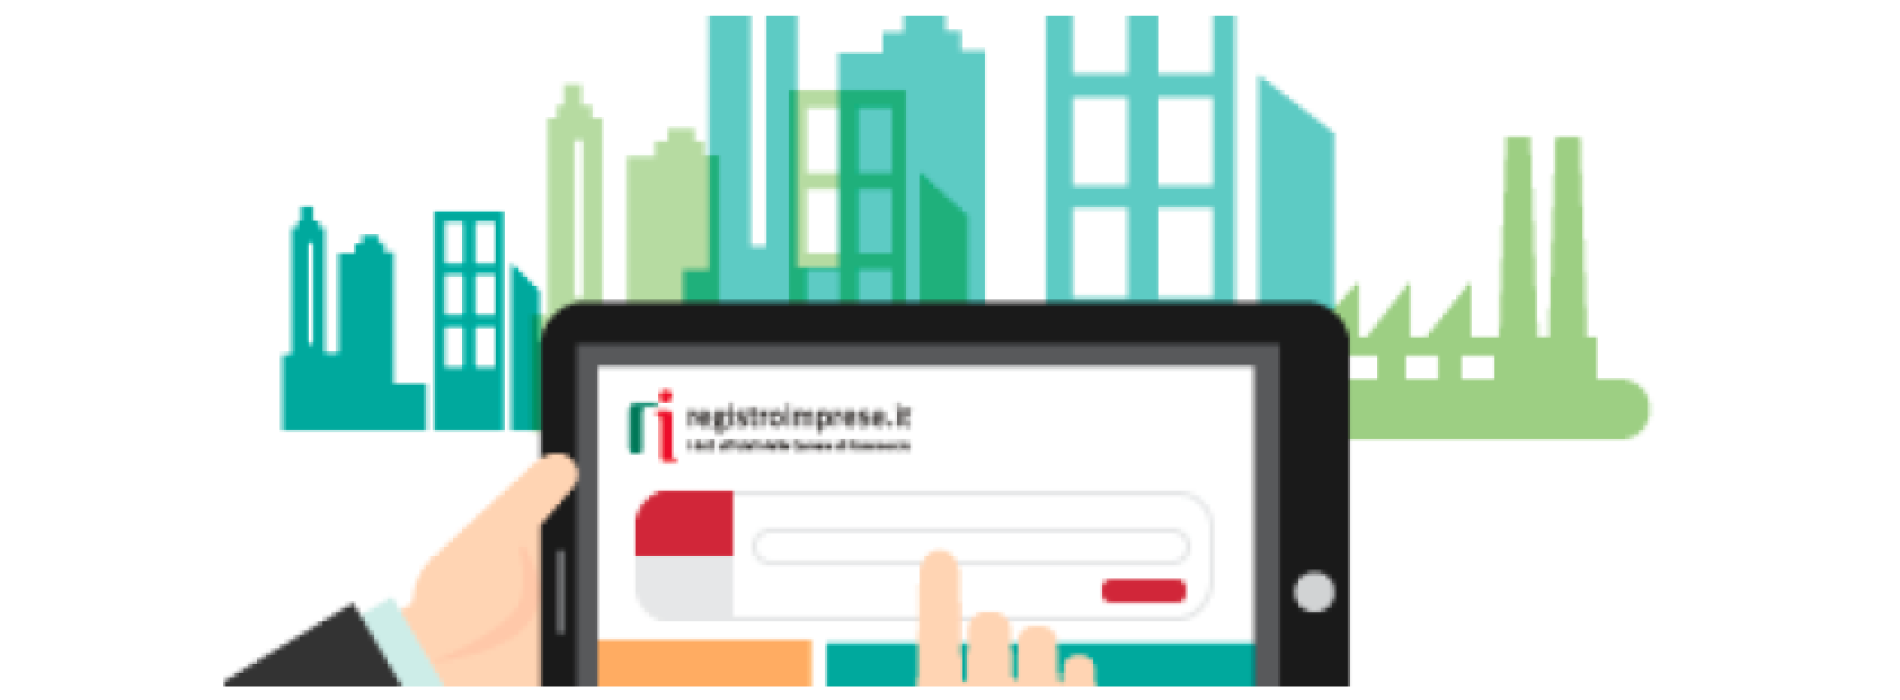 Impresa Italia. Un cassetto digitale per gli imprenditori